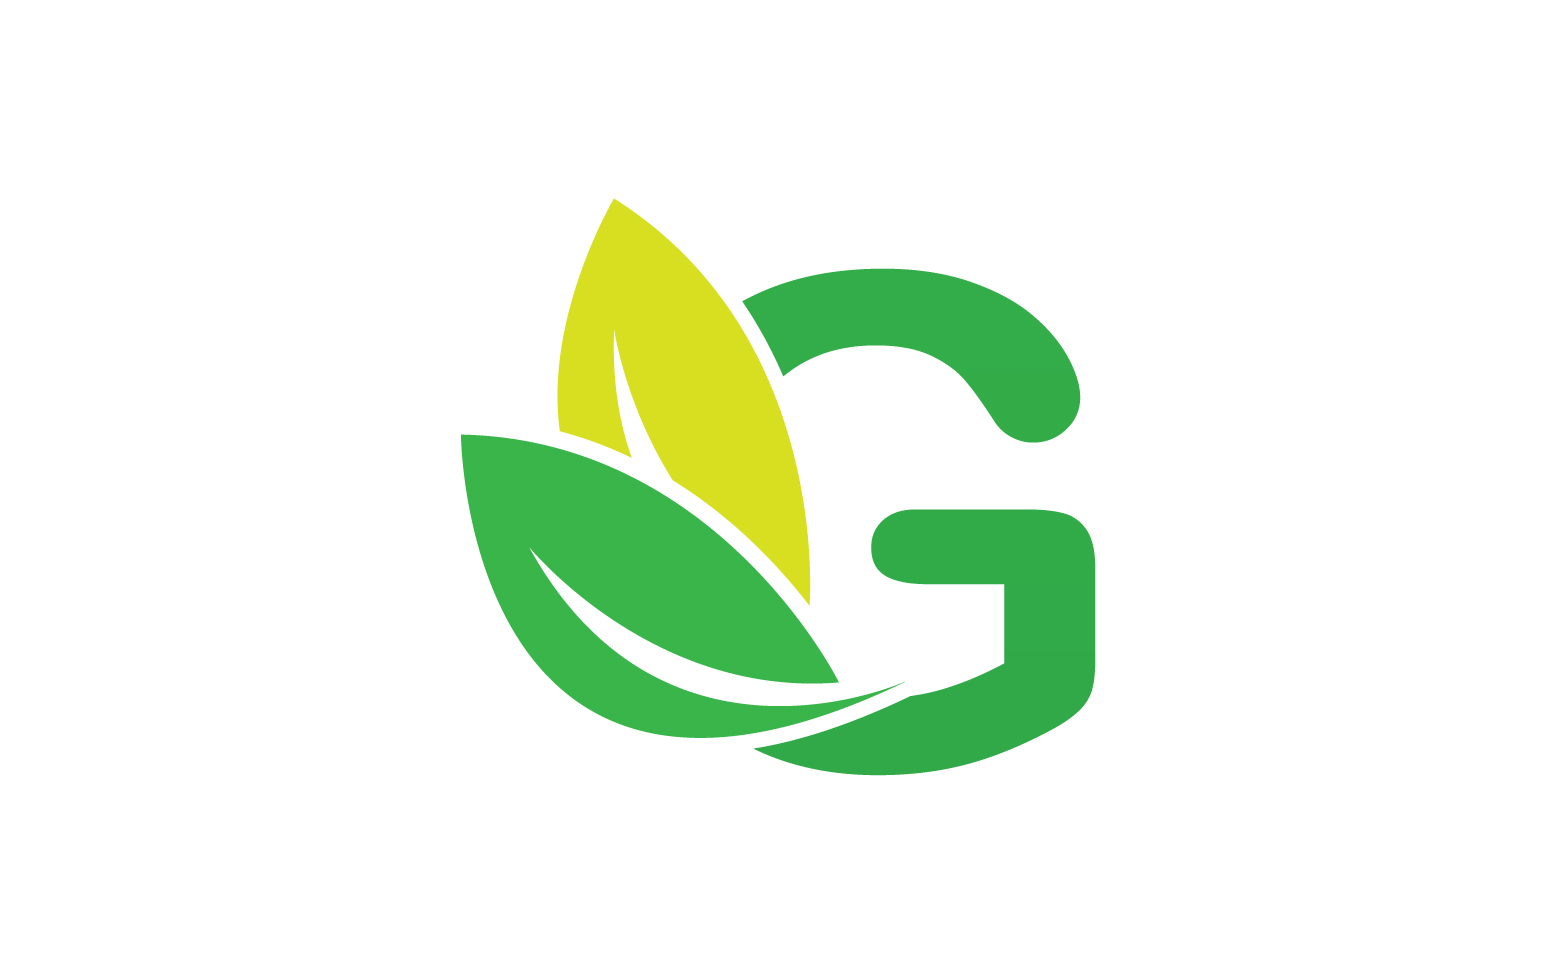 G letter leaf green logo icon version v39